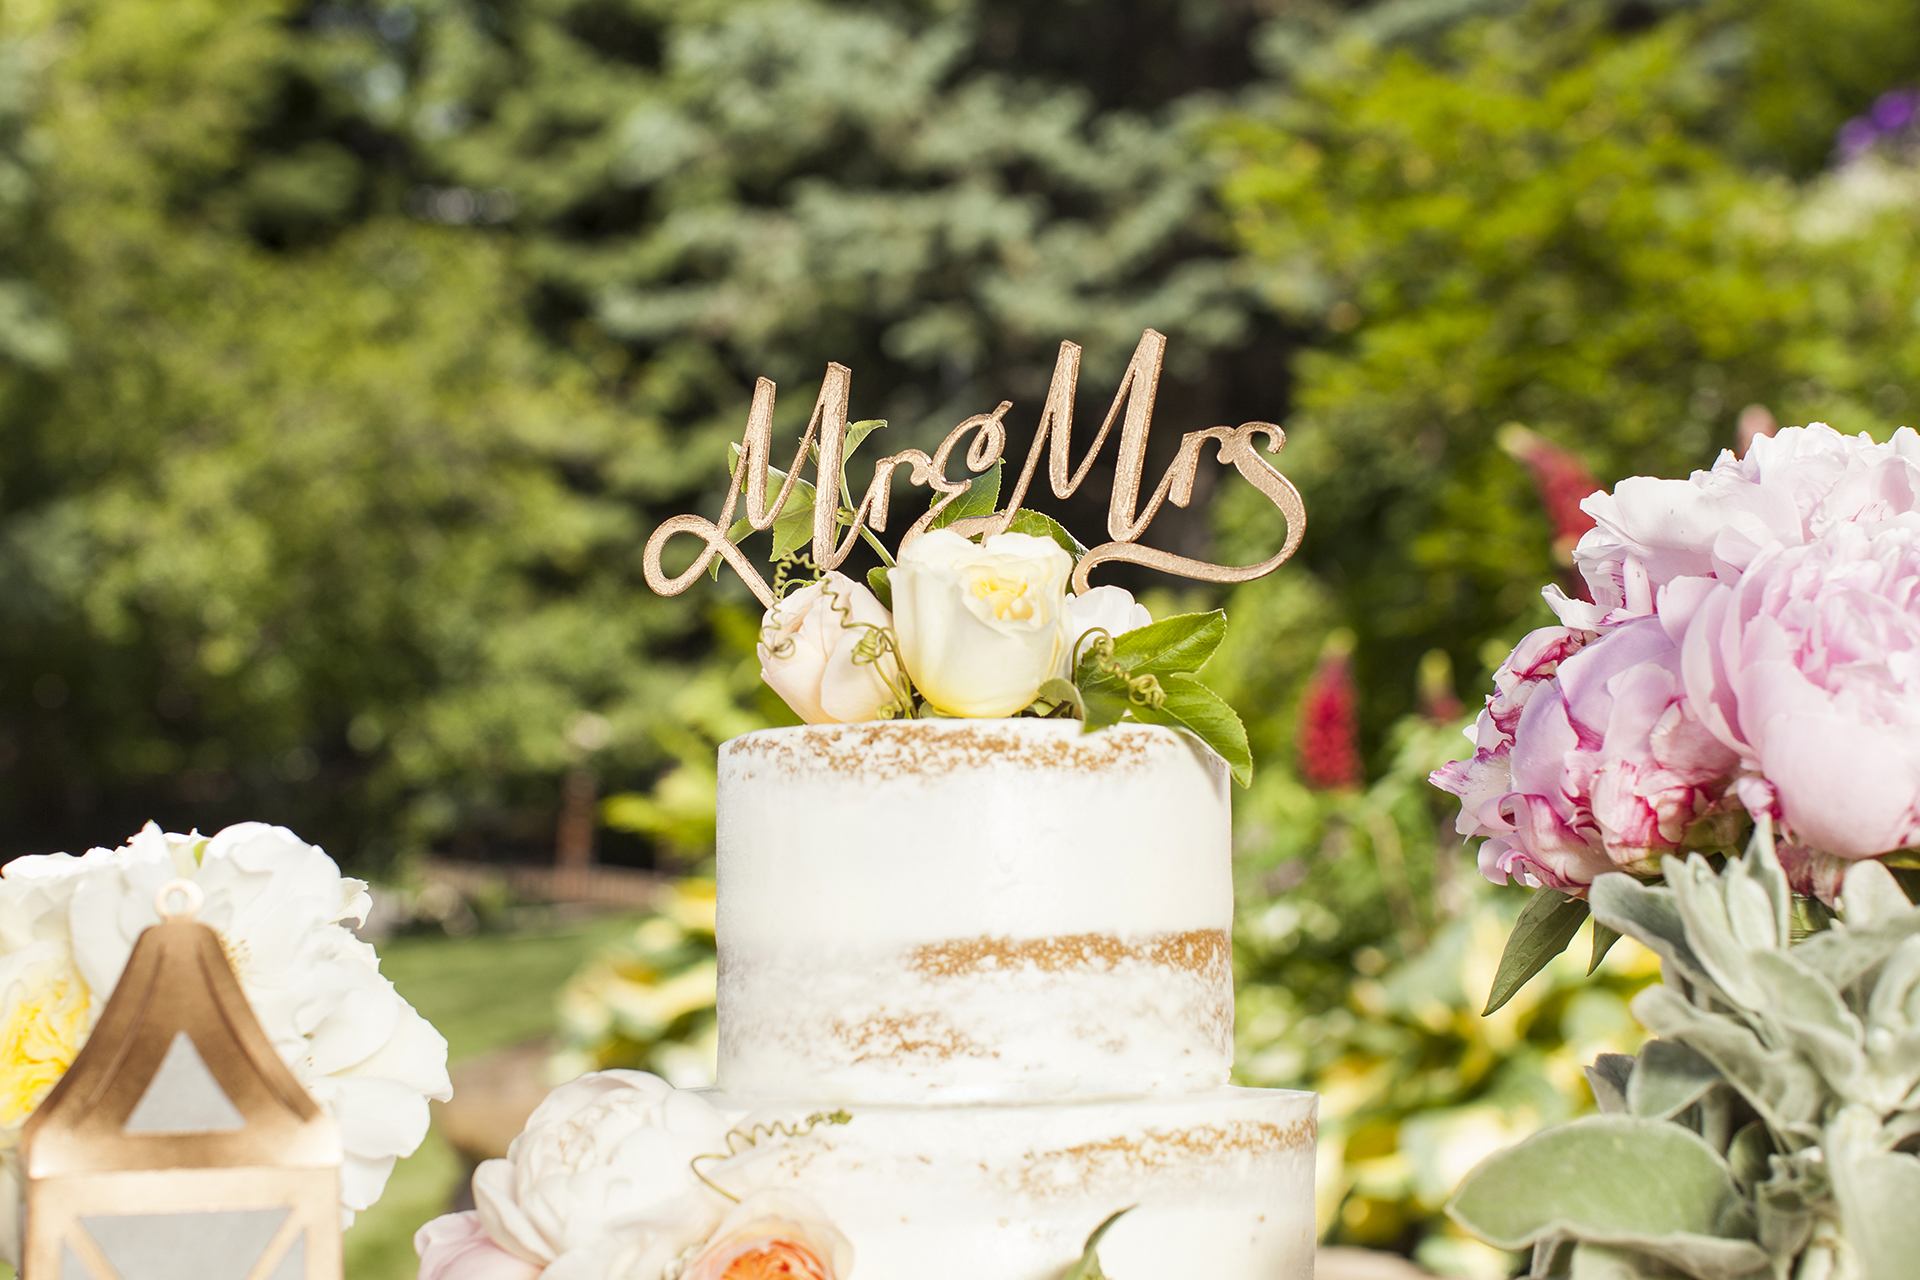 Décoration de gâteau en bois indiquant « Mr and Mrs » sur un gâteau orné de fleurs